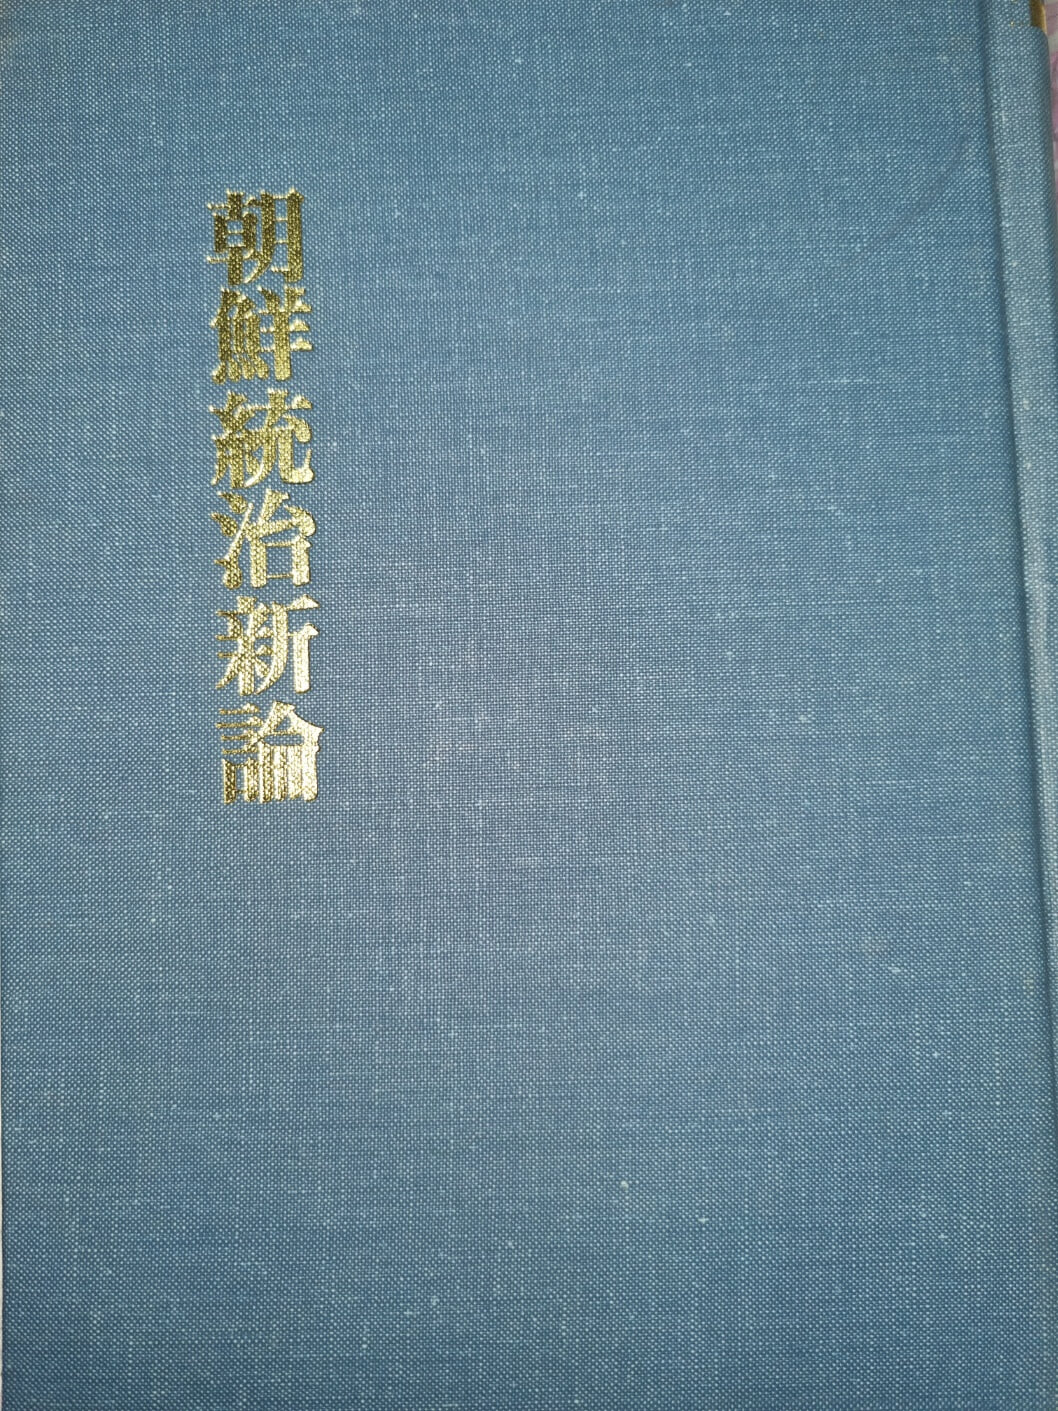 조선통치신론(朝鮮統治新論) - 소하6년(1932).1984년 민족문화 영인본